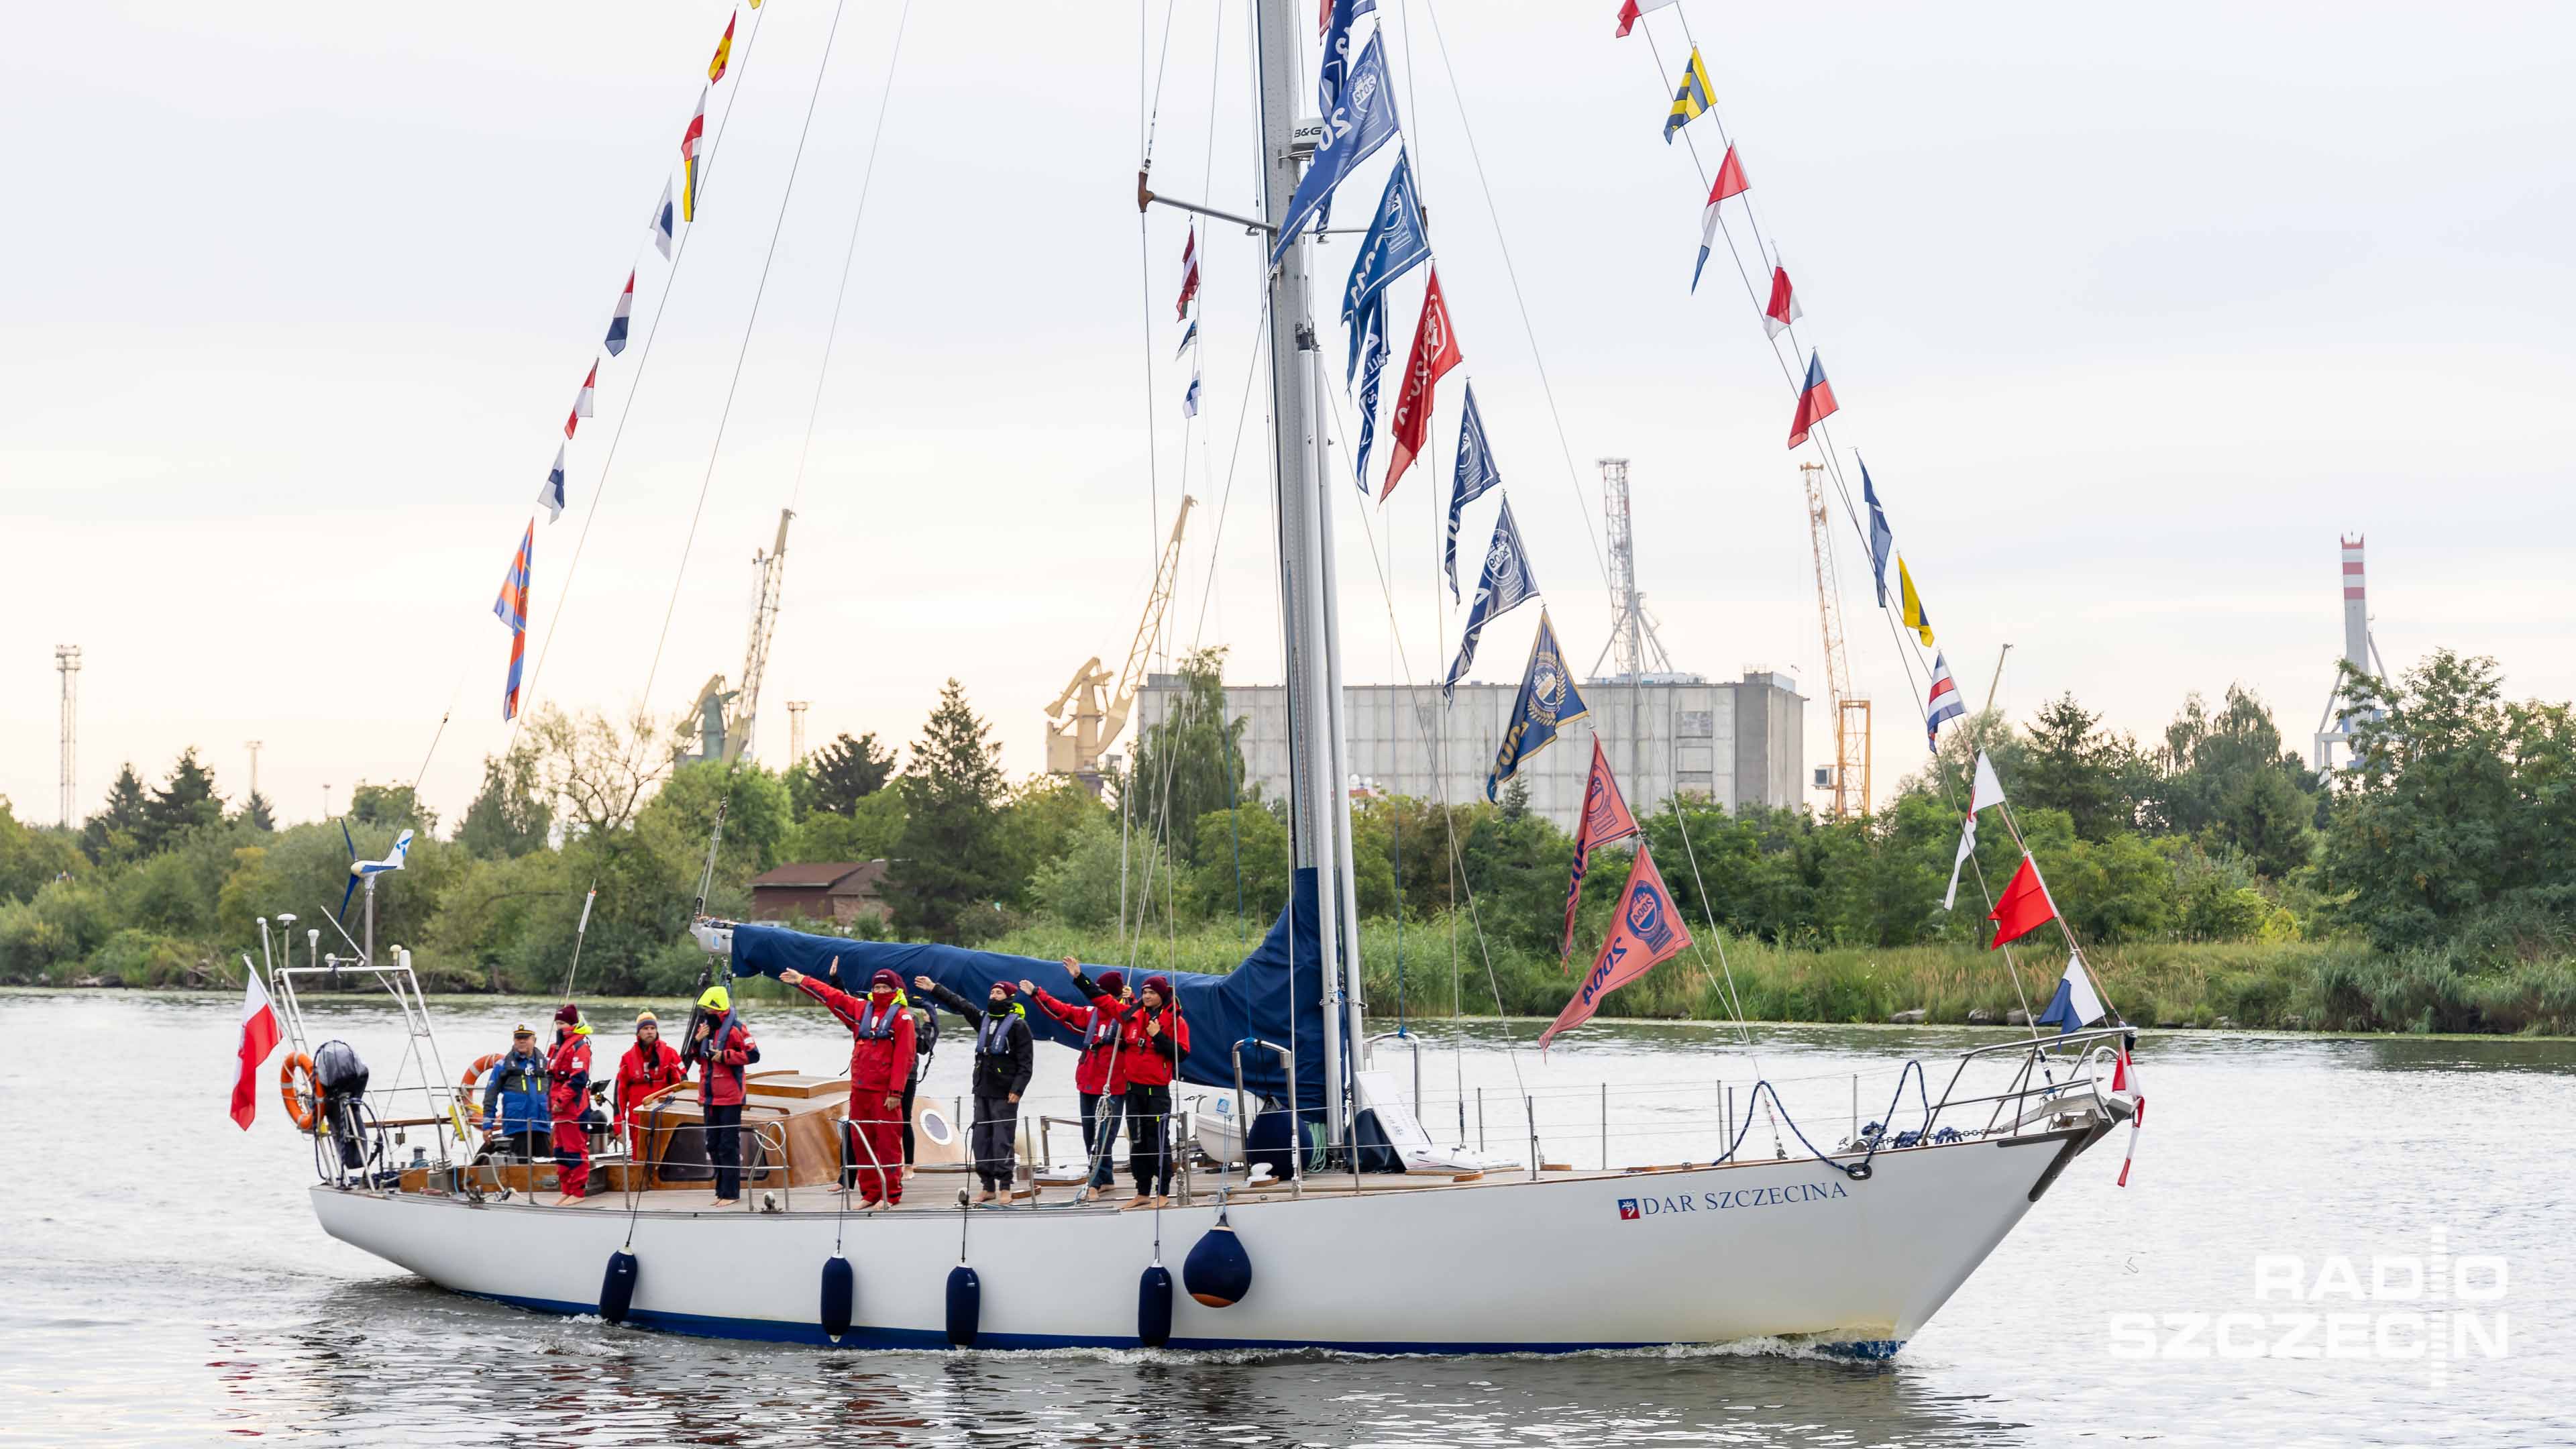 Wielu młodych ludzi, którzy obserwują finał regat, zaczyna interesować się żeglarstwem - zapewniają i sami żeglarze, i władze Szczecina.